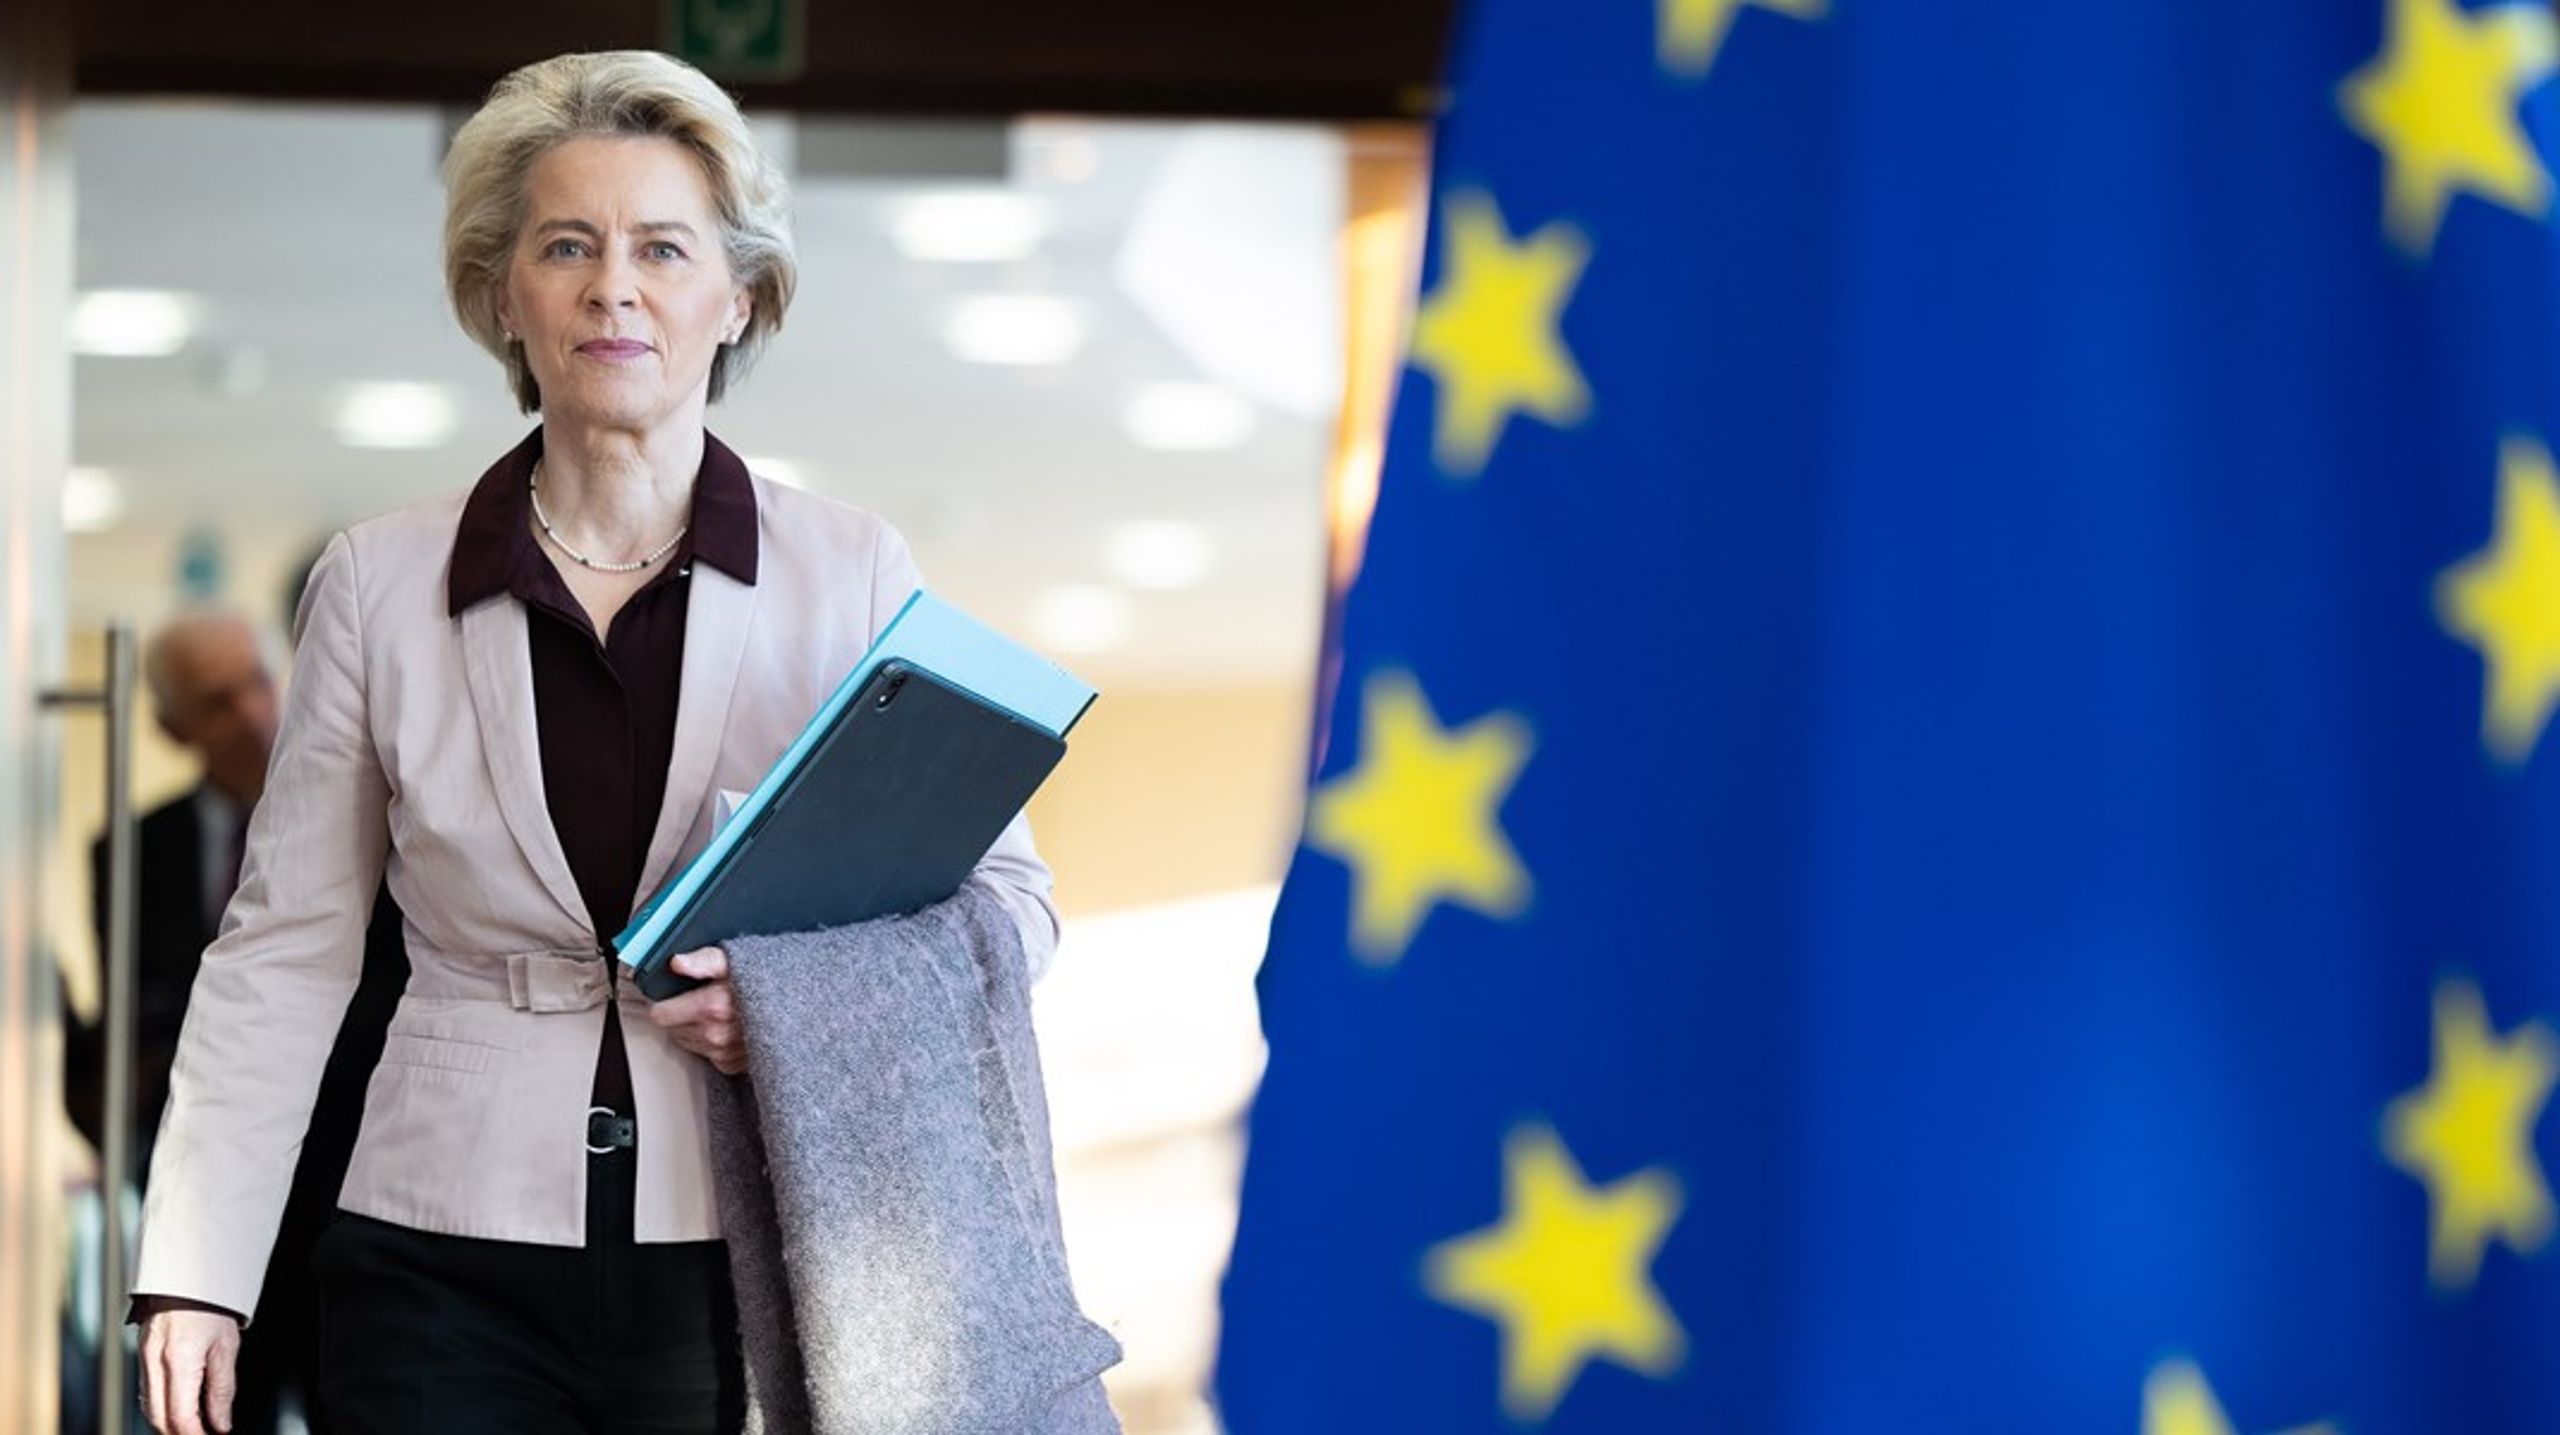 EU-kommissionens ordförande Ursula von der Leyen har ännu inte gett besked om hon kandiderar till en andra mandatperiod – och behöver därmed ännu&nbsp;inte följa sina egna riktlinjer om att skilja rollerna åt.&nbsp;